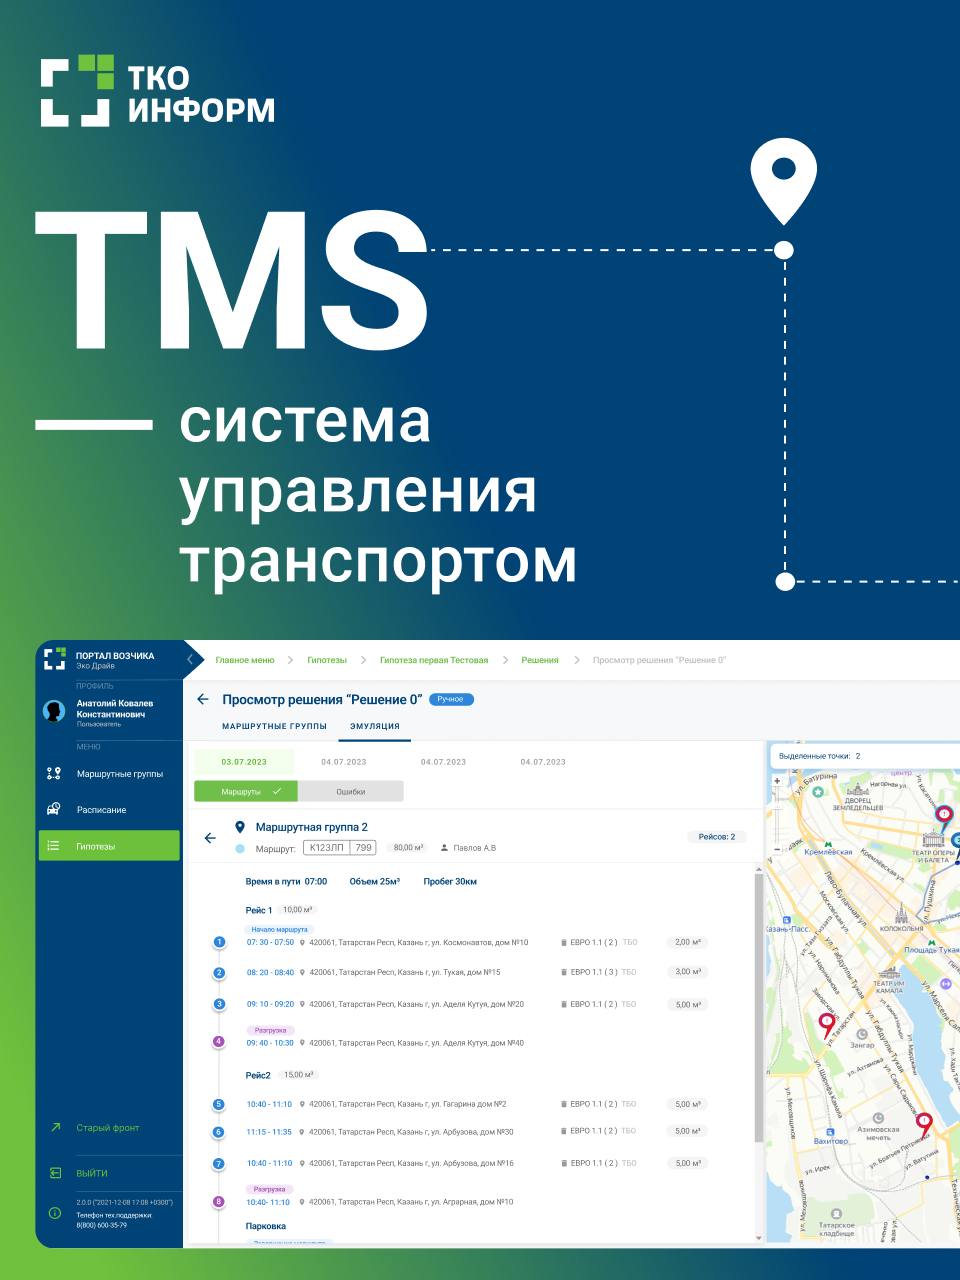 TMS (Система управления транспортом) - новый продукт от ООО "ТКО-Информ"